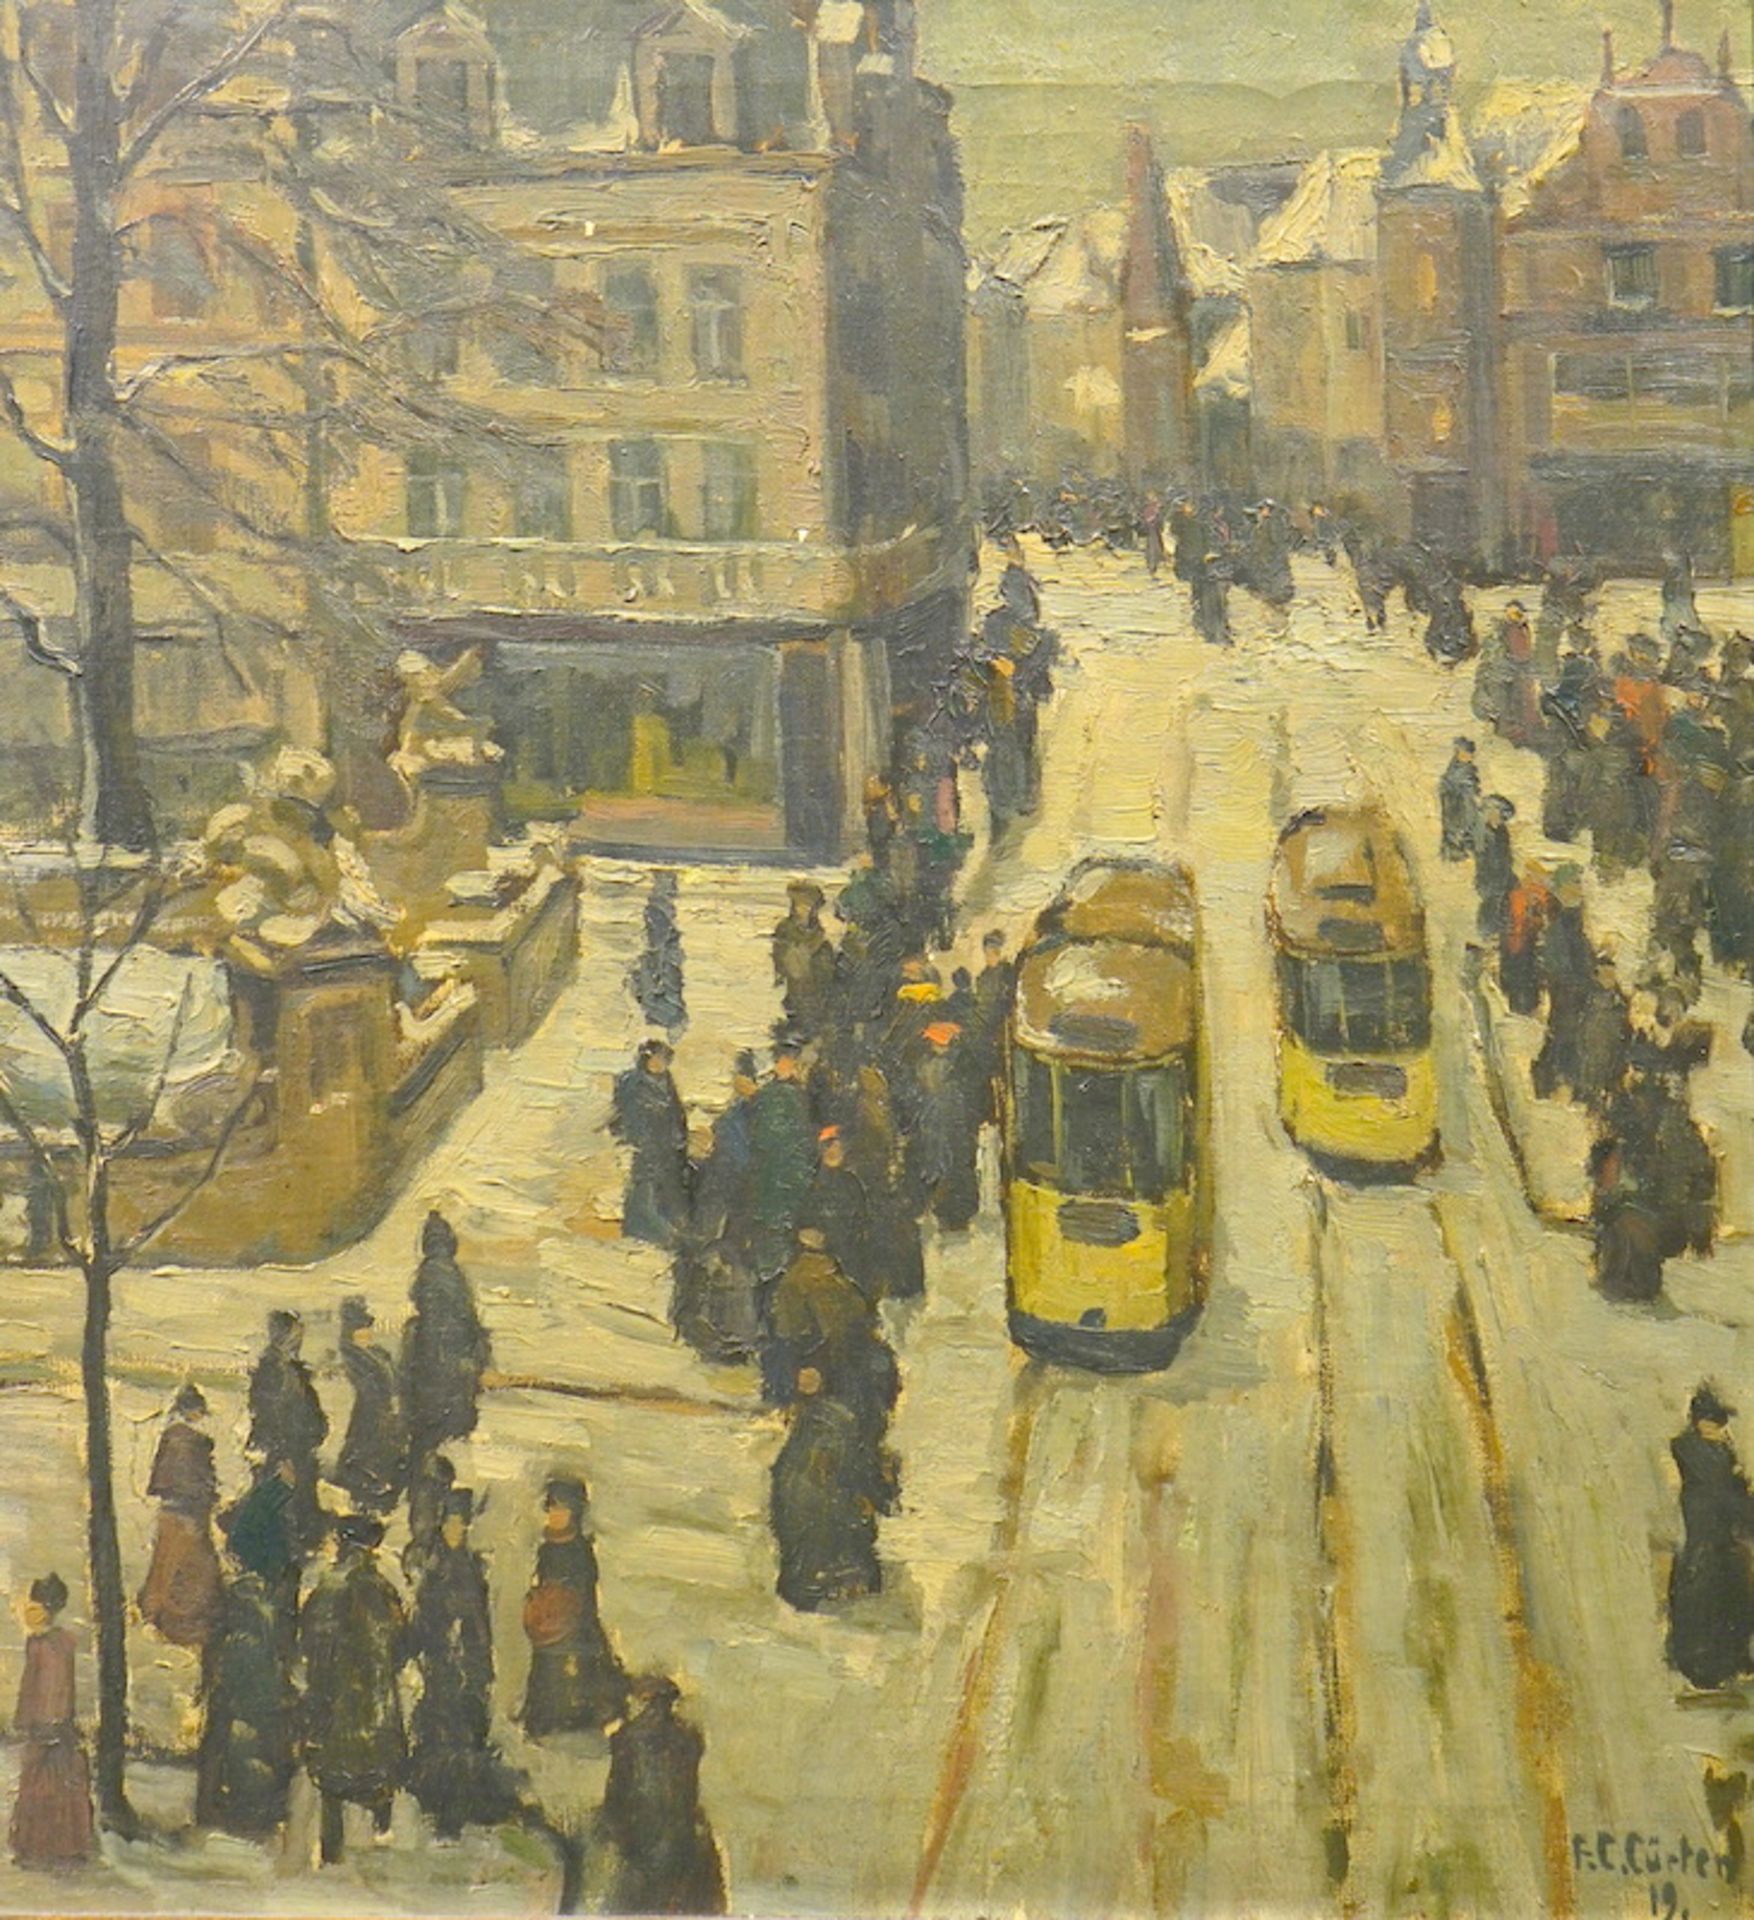 Cürten, Ferdinand Carl: Corneliusplatz in Düsseldorf mit Strassenbahnen - dat. Jan. 1919